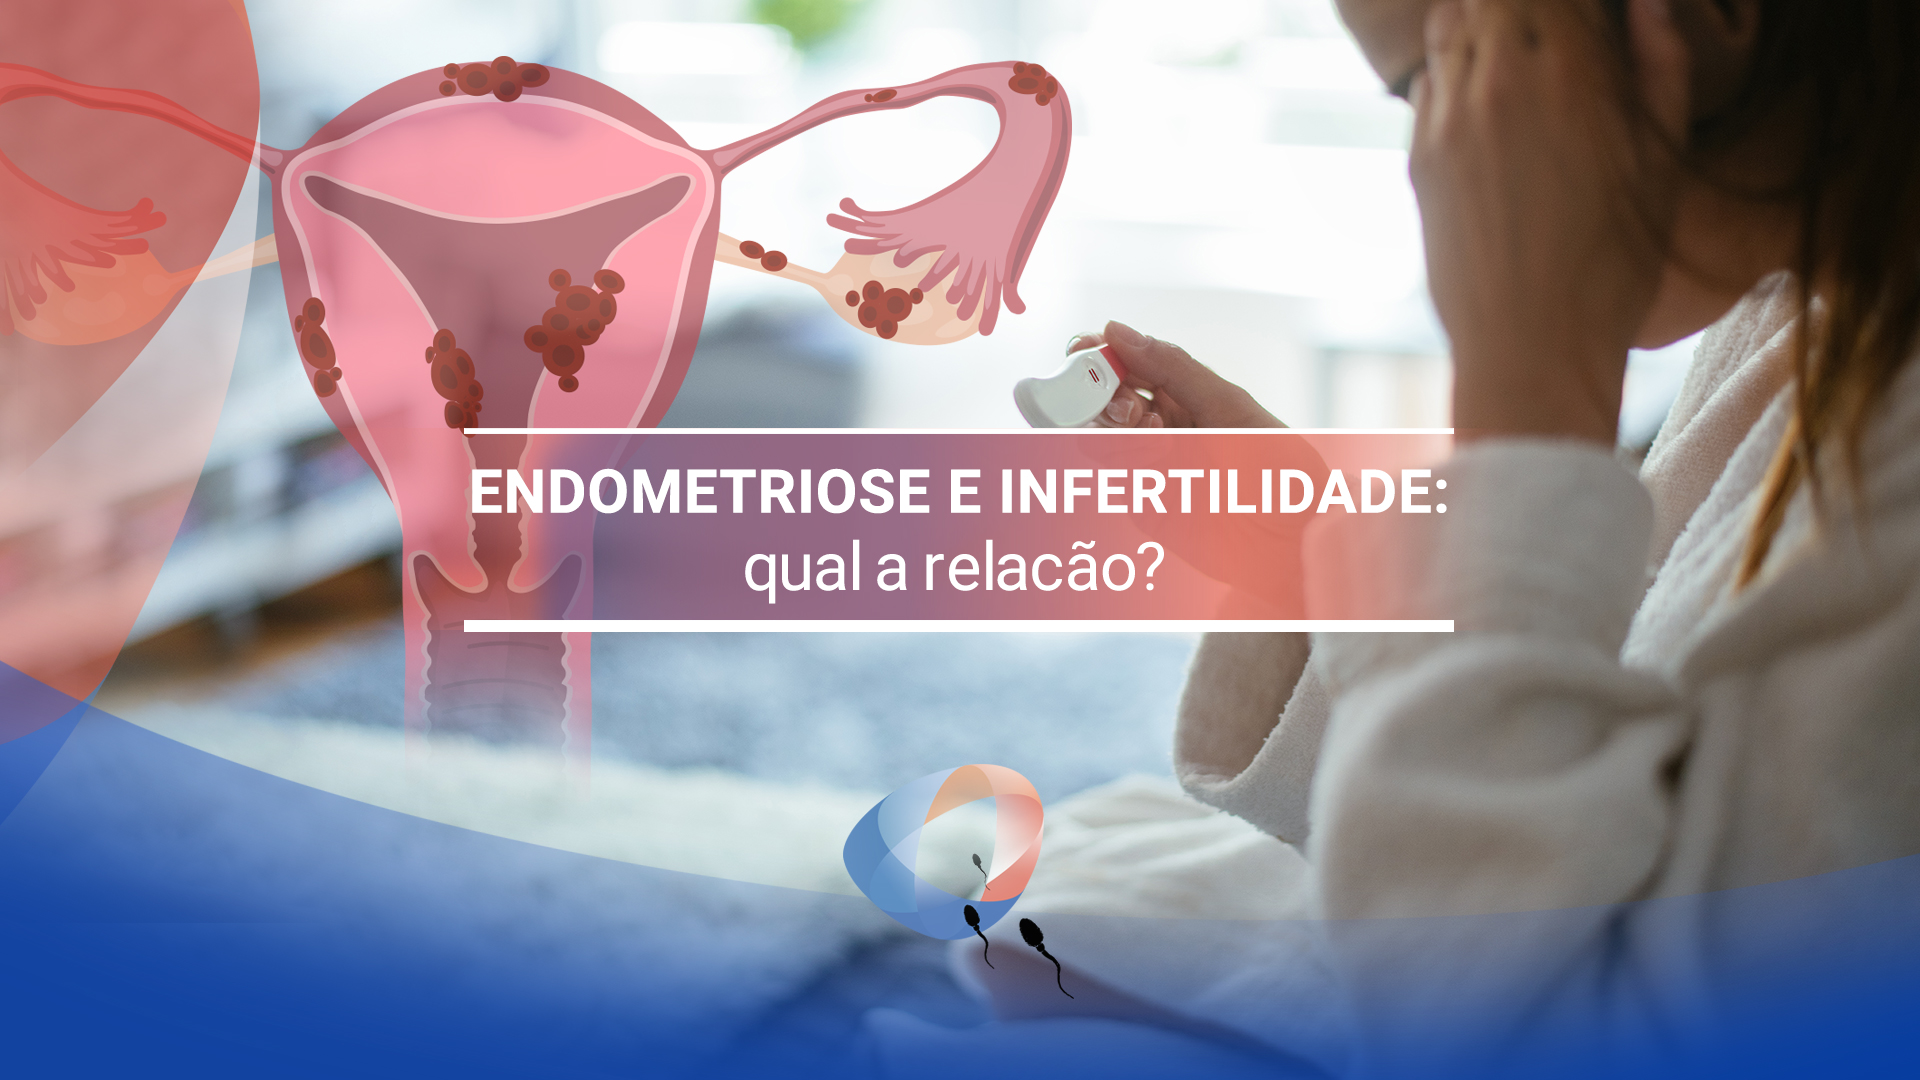 Endometriose e infertilidade: qual a relação?